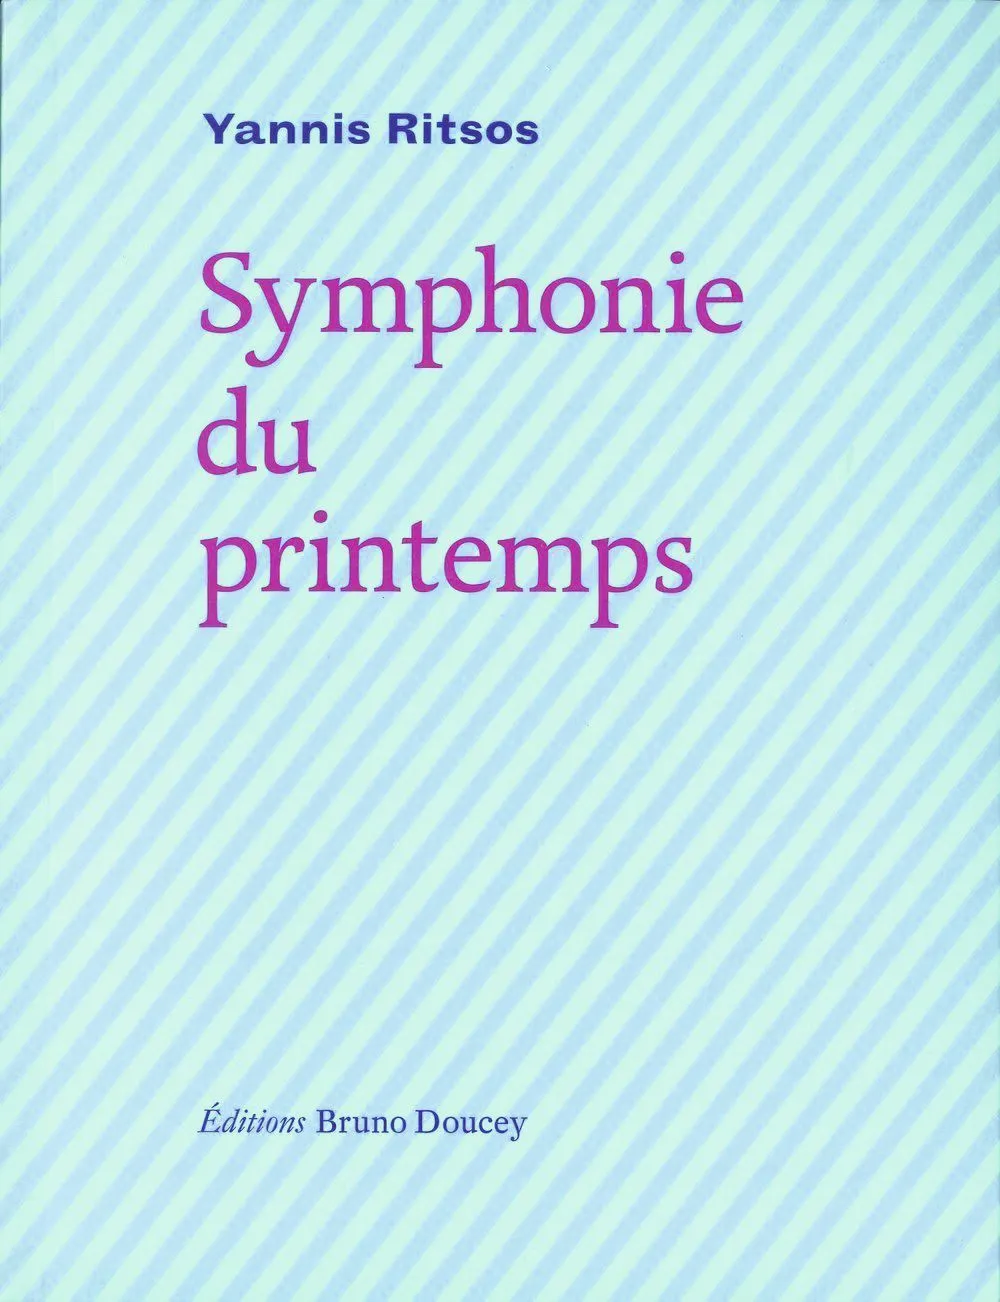 Symphonie du printemps, Yannis Ritsos, Éditions Bruno Doucey.